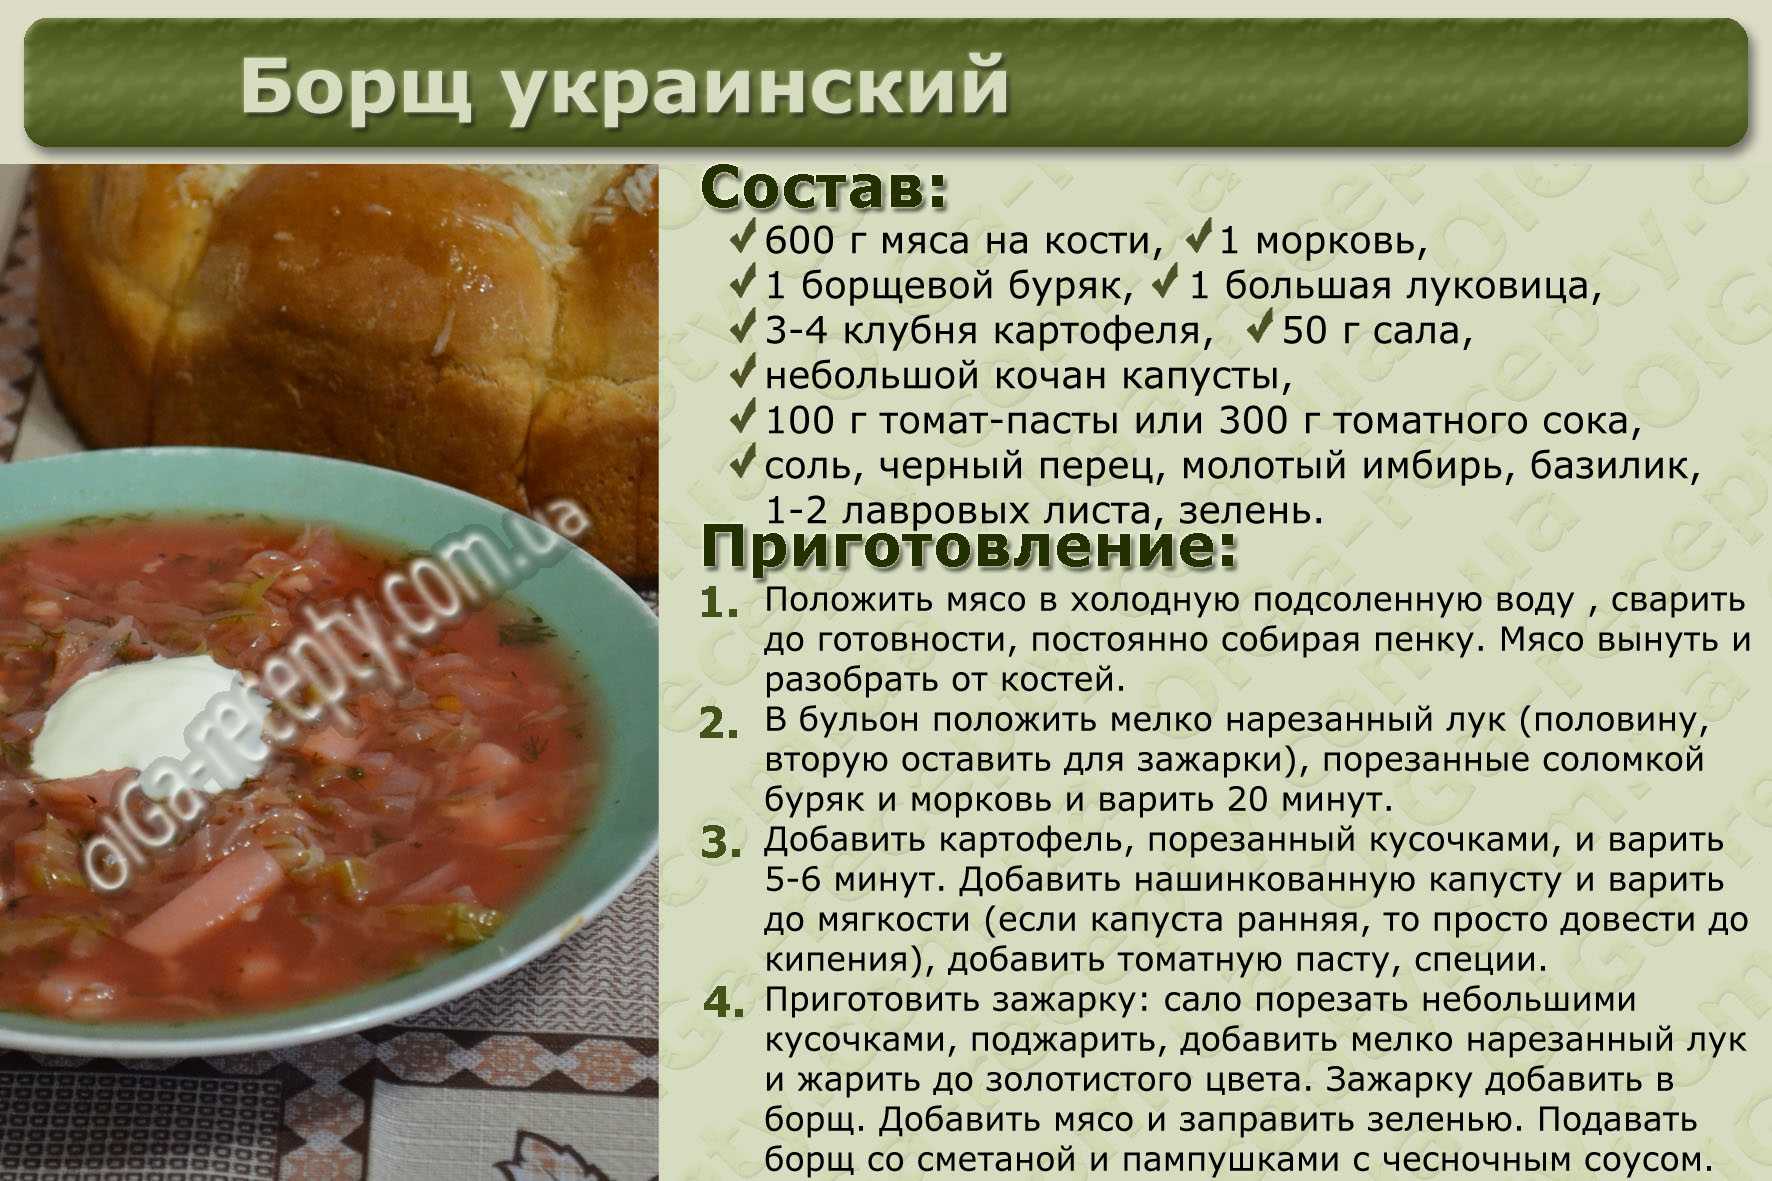 Крем-суп из брокколи: рецепты для диетического и основного питания. разнообразие рецептов крем - супа от простого до сложного из брокколи - автор екатерина данилова